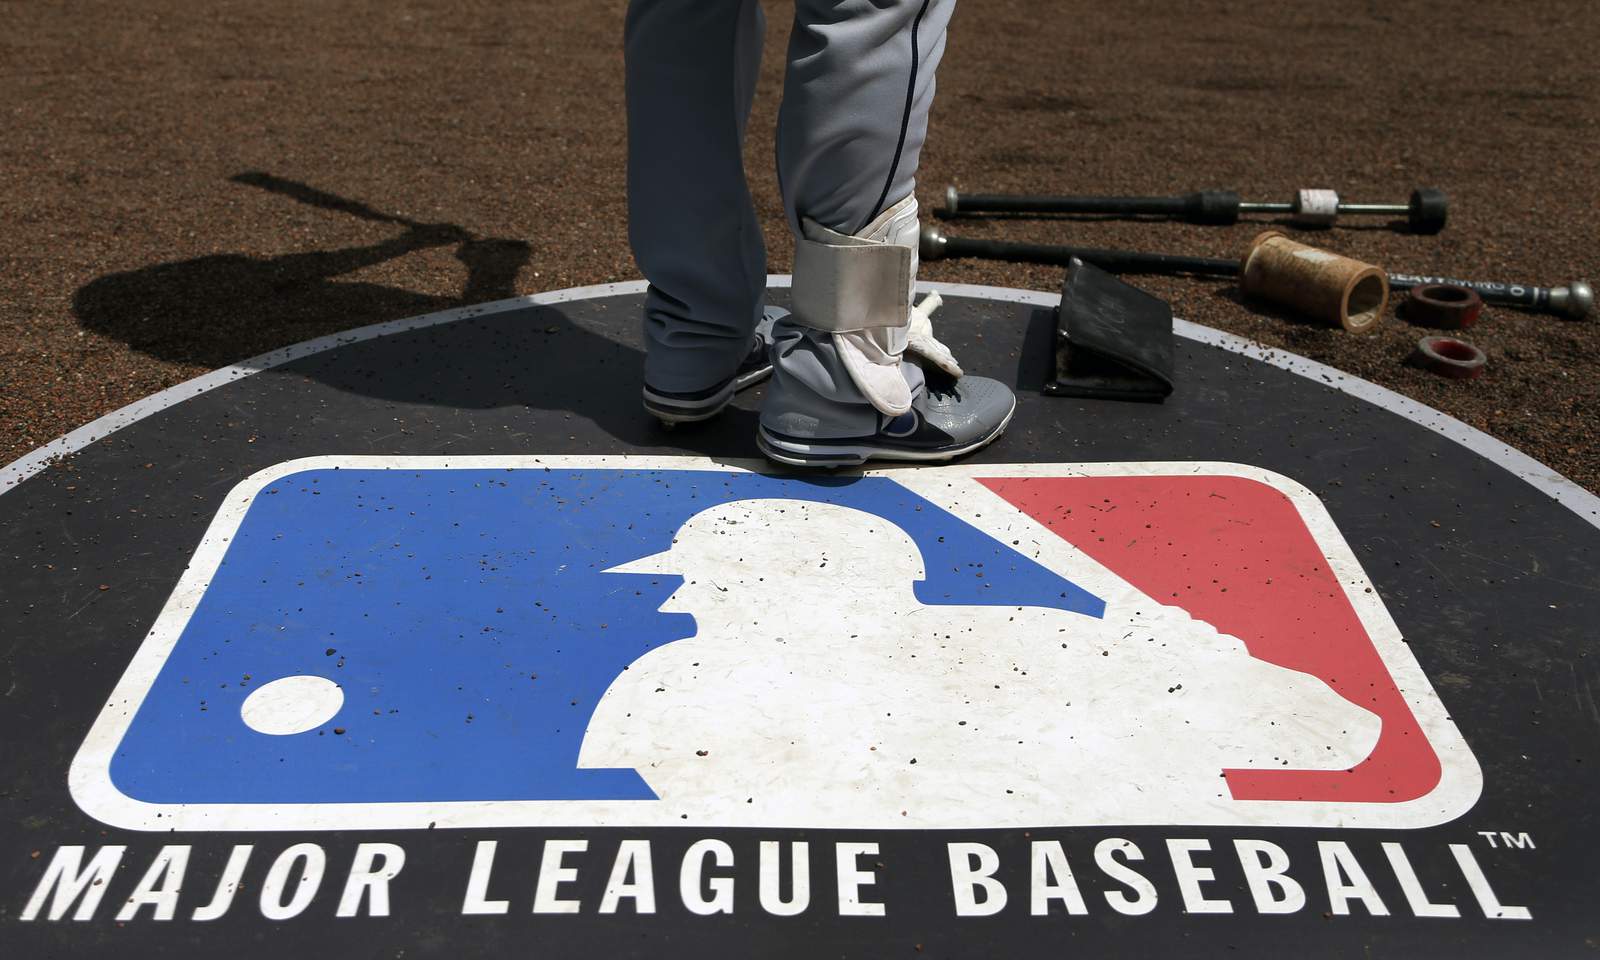 AP Exclusive: MLB plan saves big-spending teams $100M each